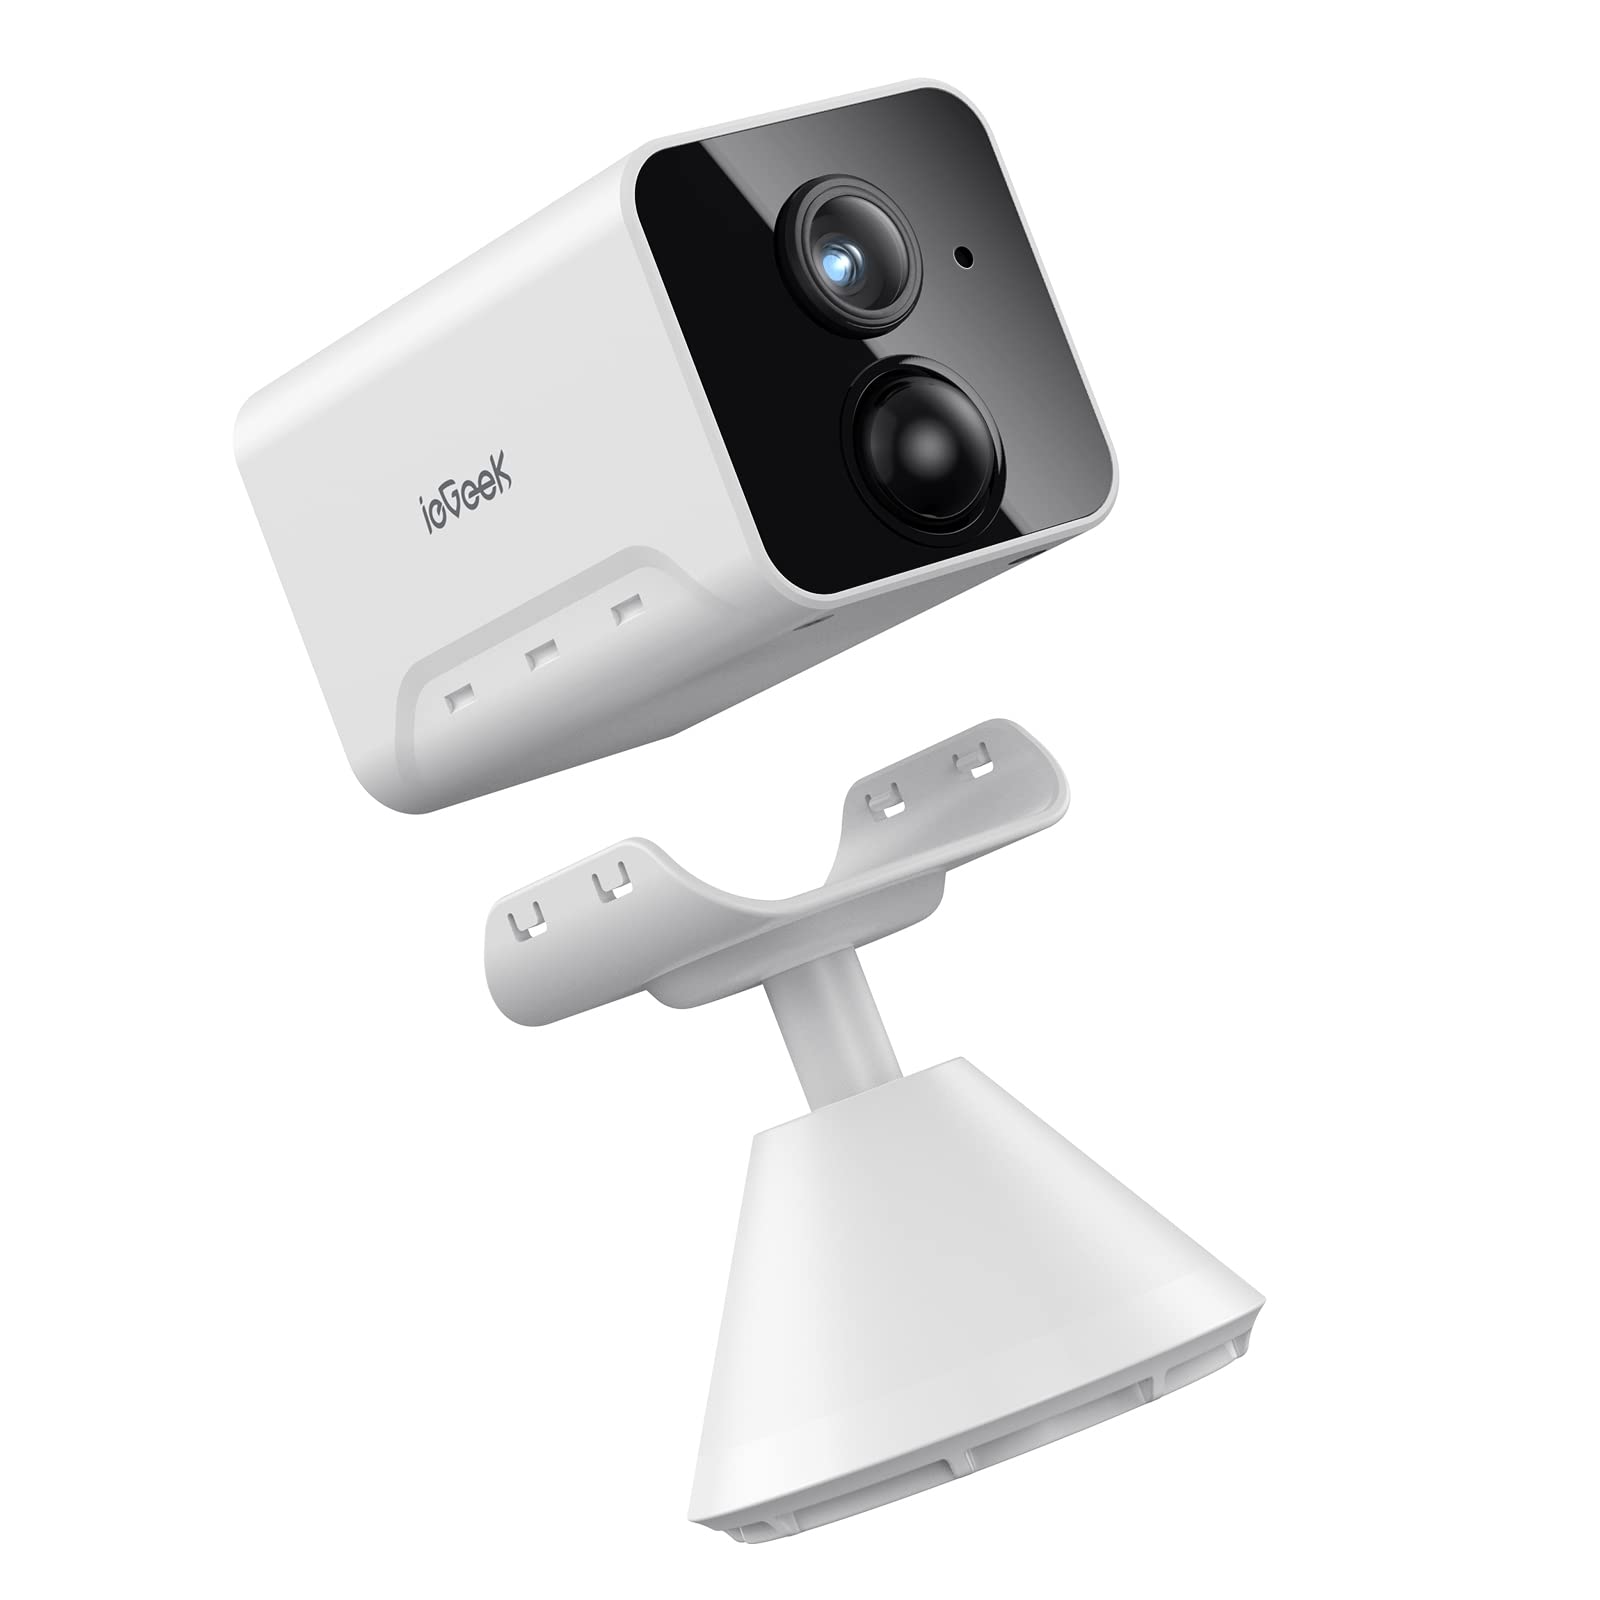 ieGeek 1080P HD Überwachungskamera Innen Akku,Überwachungskamera Innen WLAN 2.4GHz, WLAN Ip Kamera mit Nachtsicht, PIR Bewegungserkennung, Zwei-Wege-Audio,Cloud/SD Storage,IP65